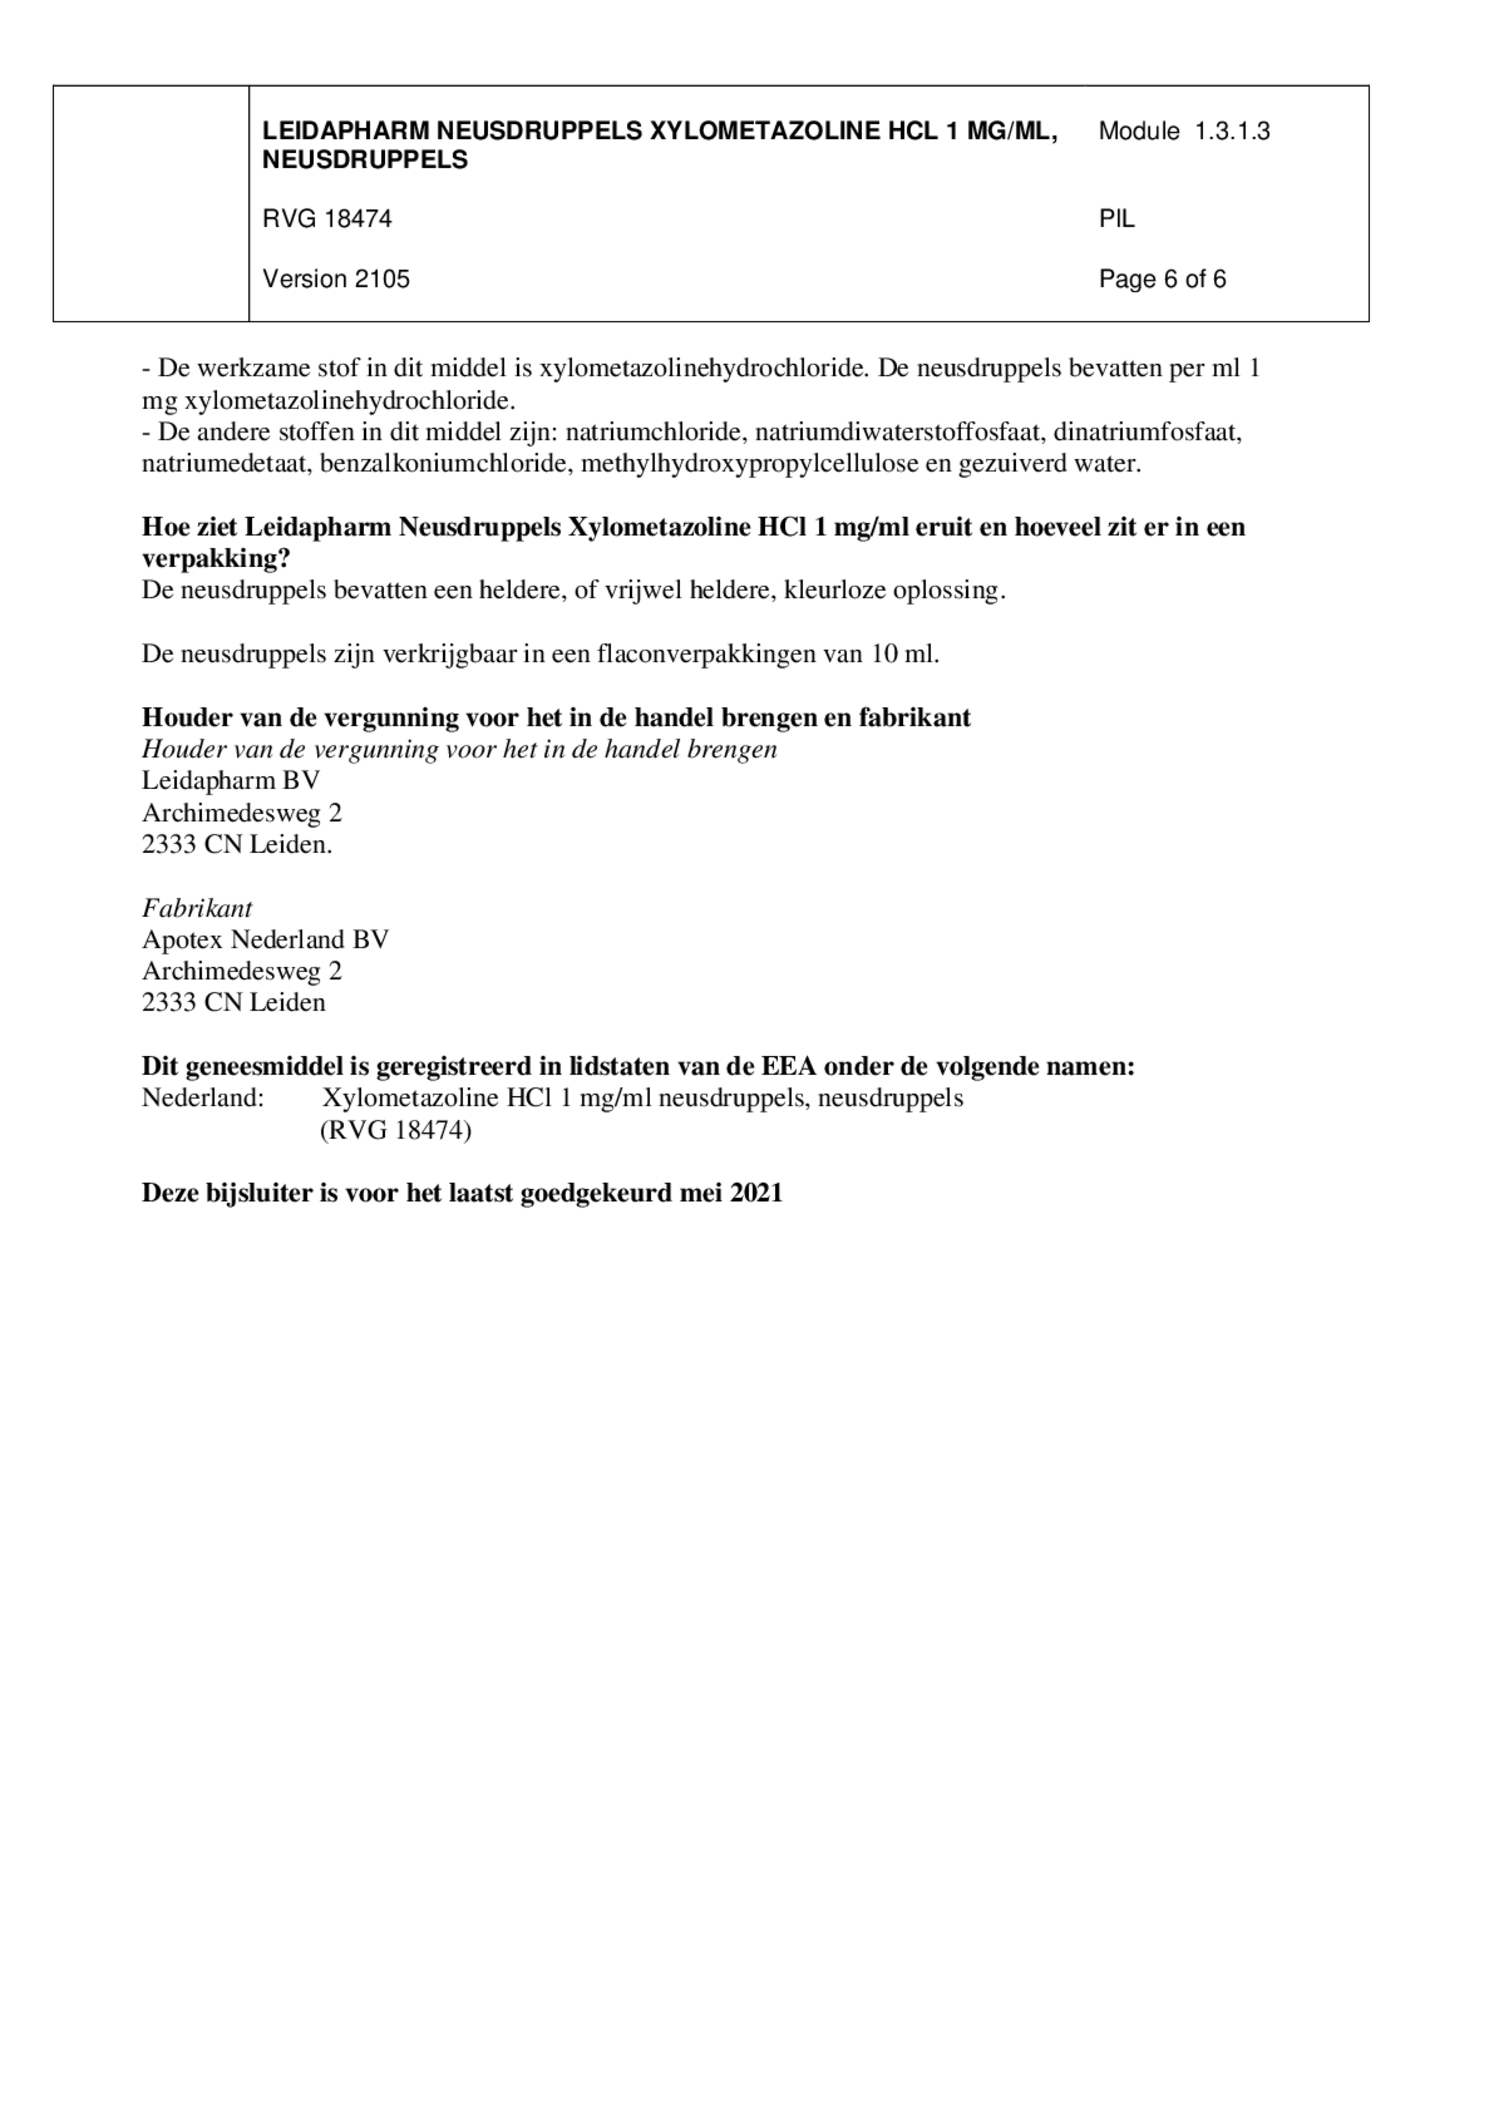 Neusdruppels Xylometazoline HCl 1 mg/ml afbeelding van document #6, bijsluiter